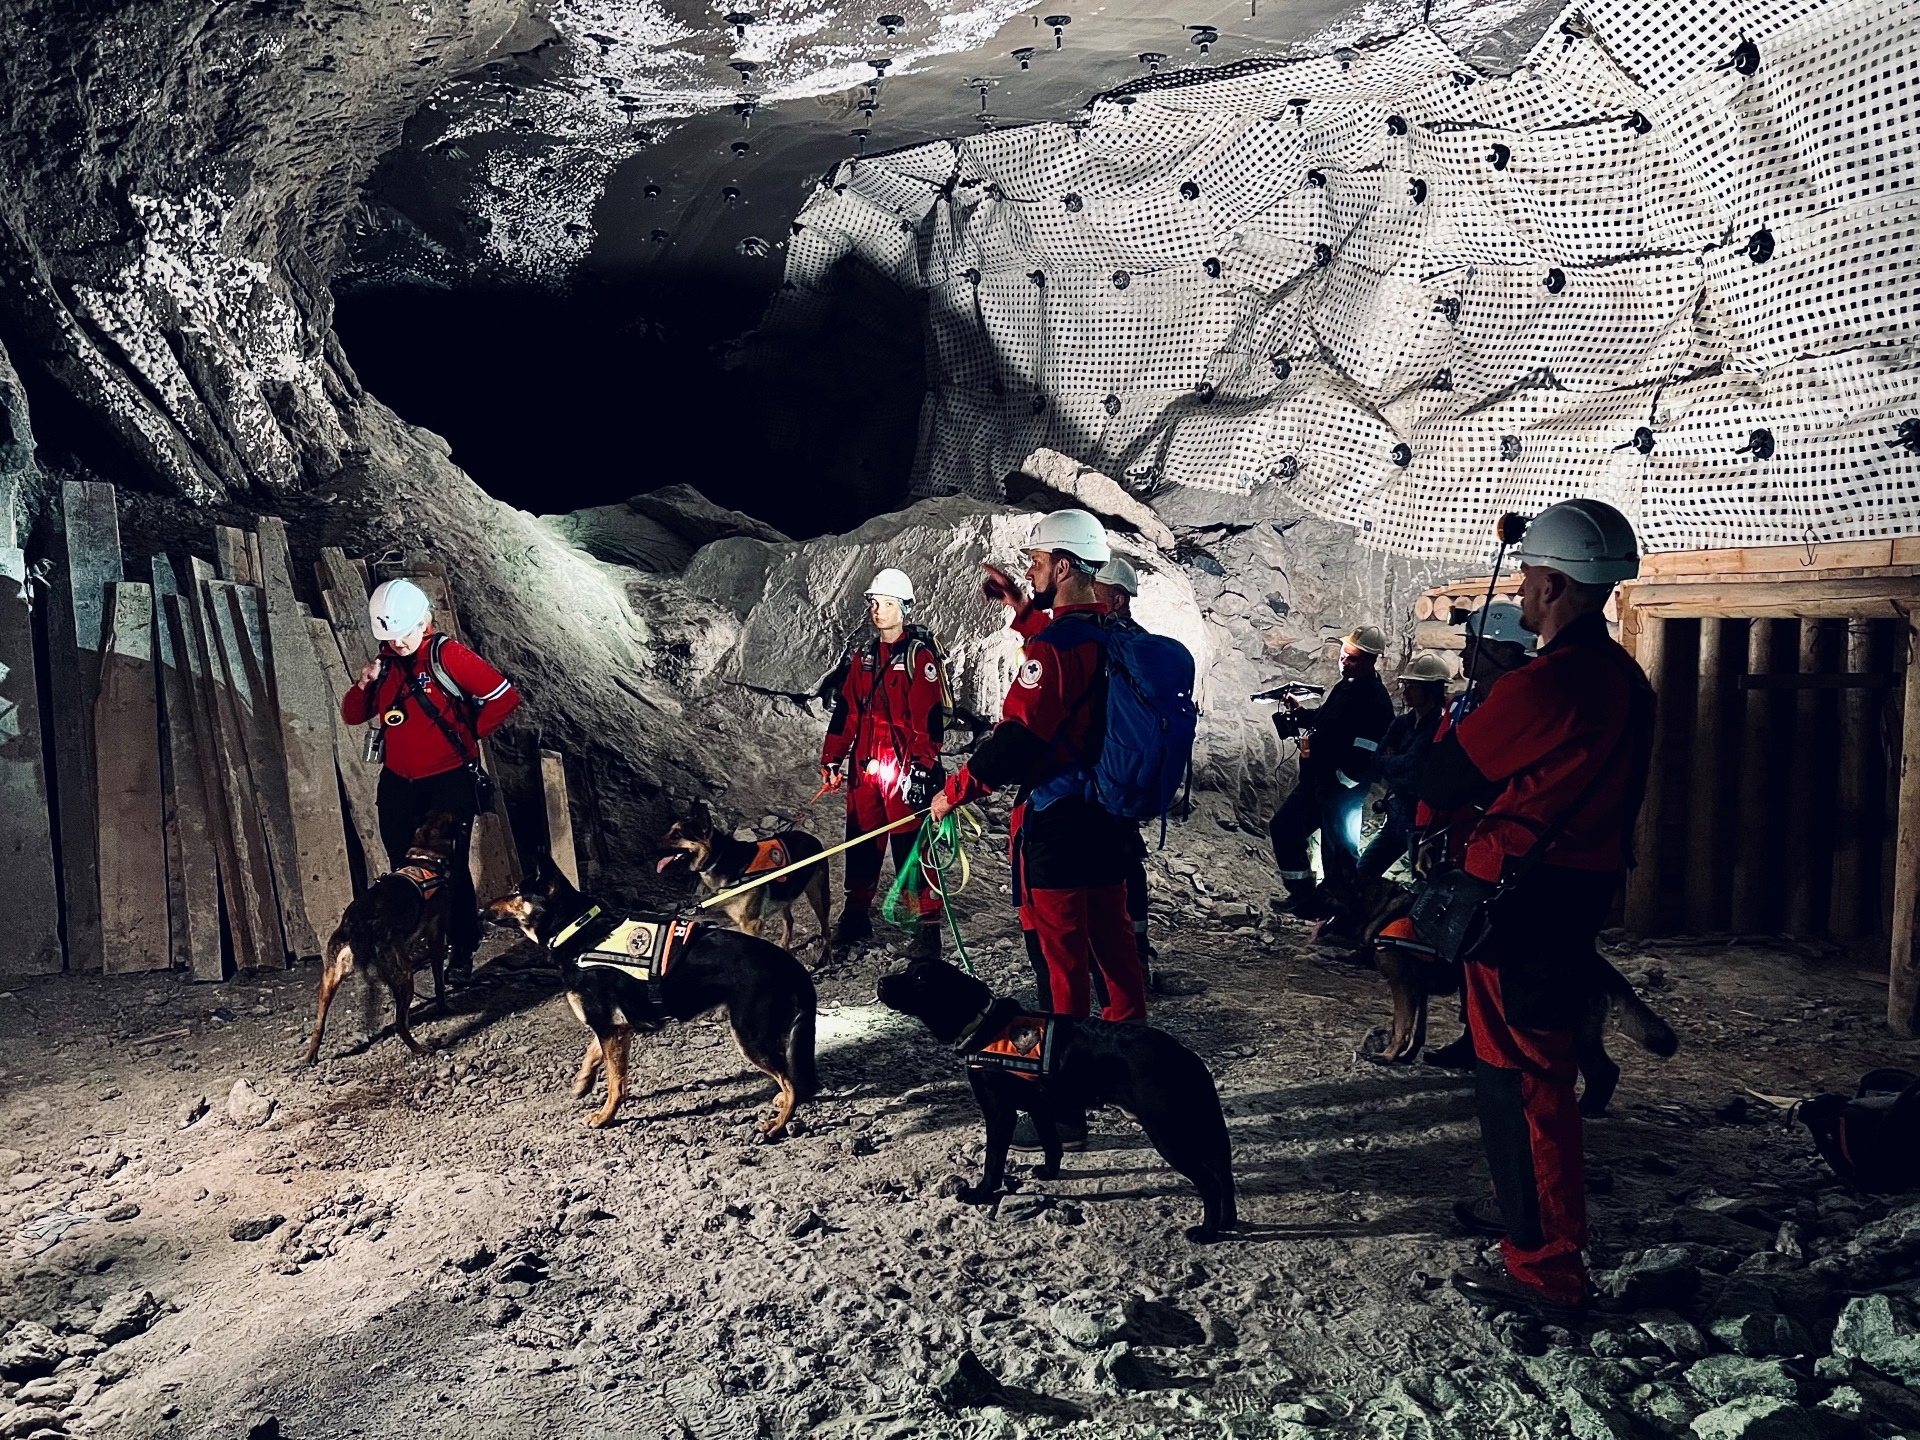 Ratownicy z psami na smyczach w podziemnej solnej komorze